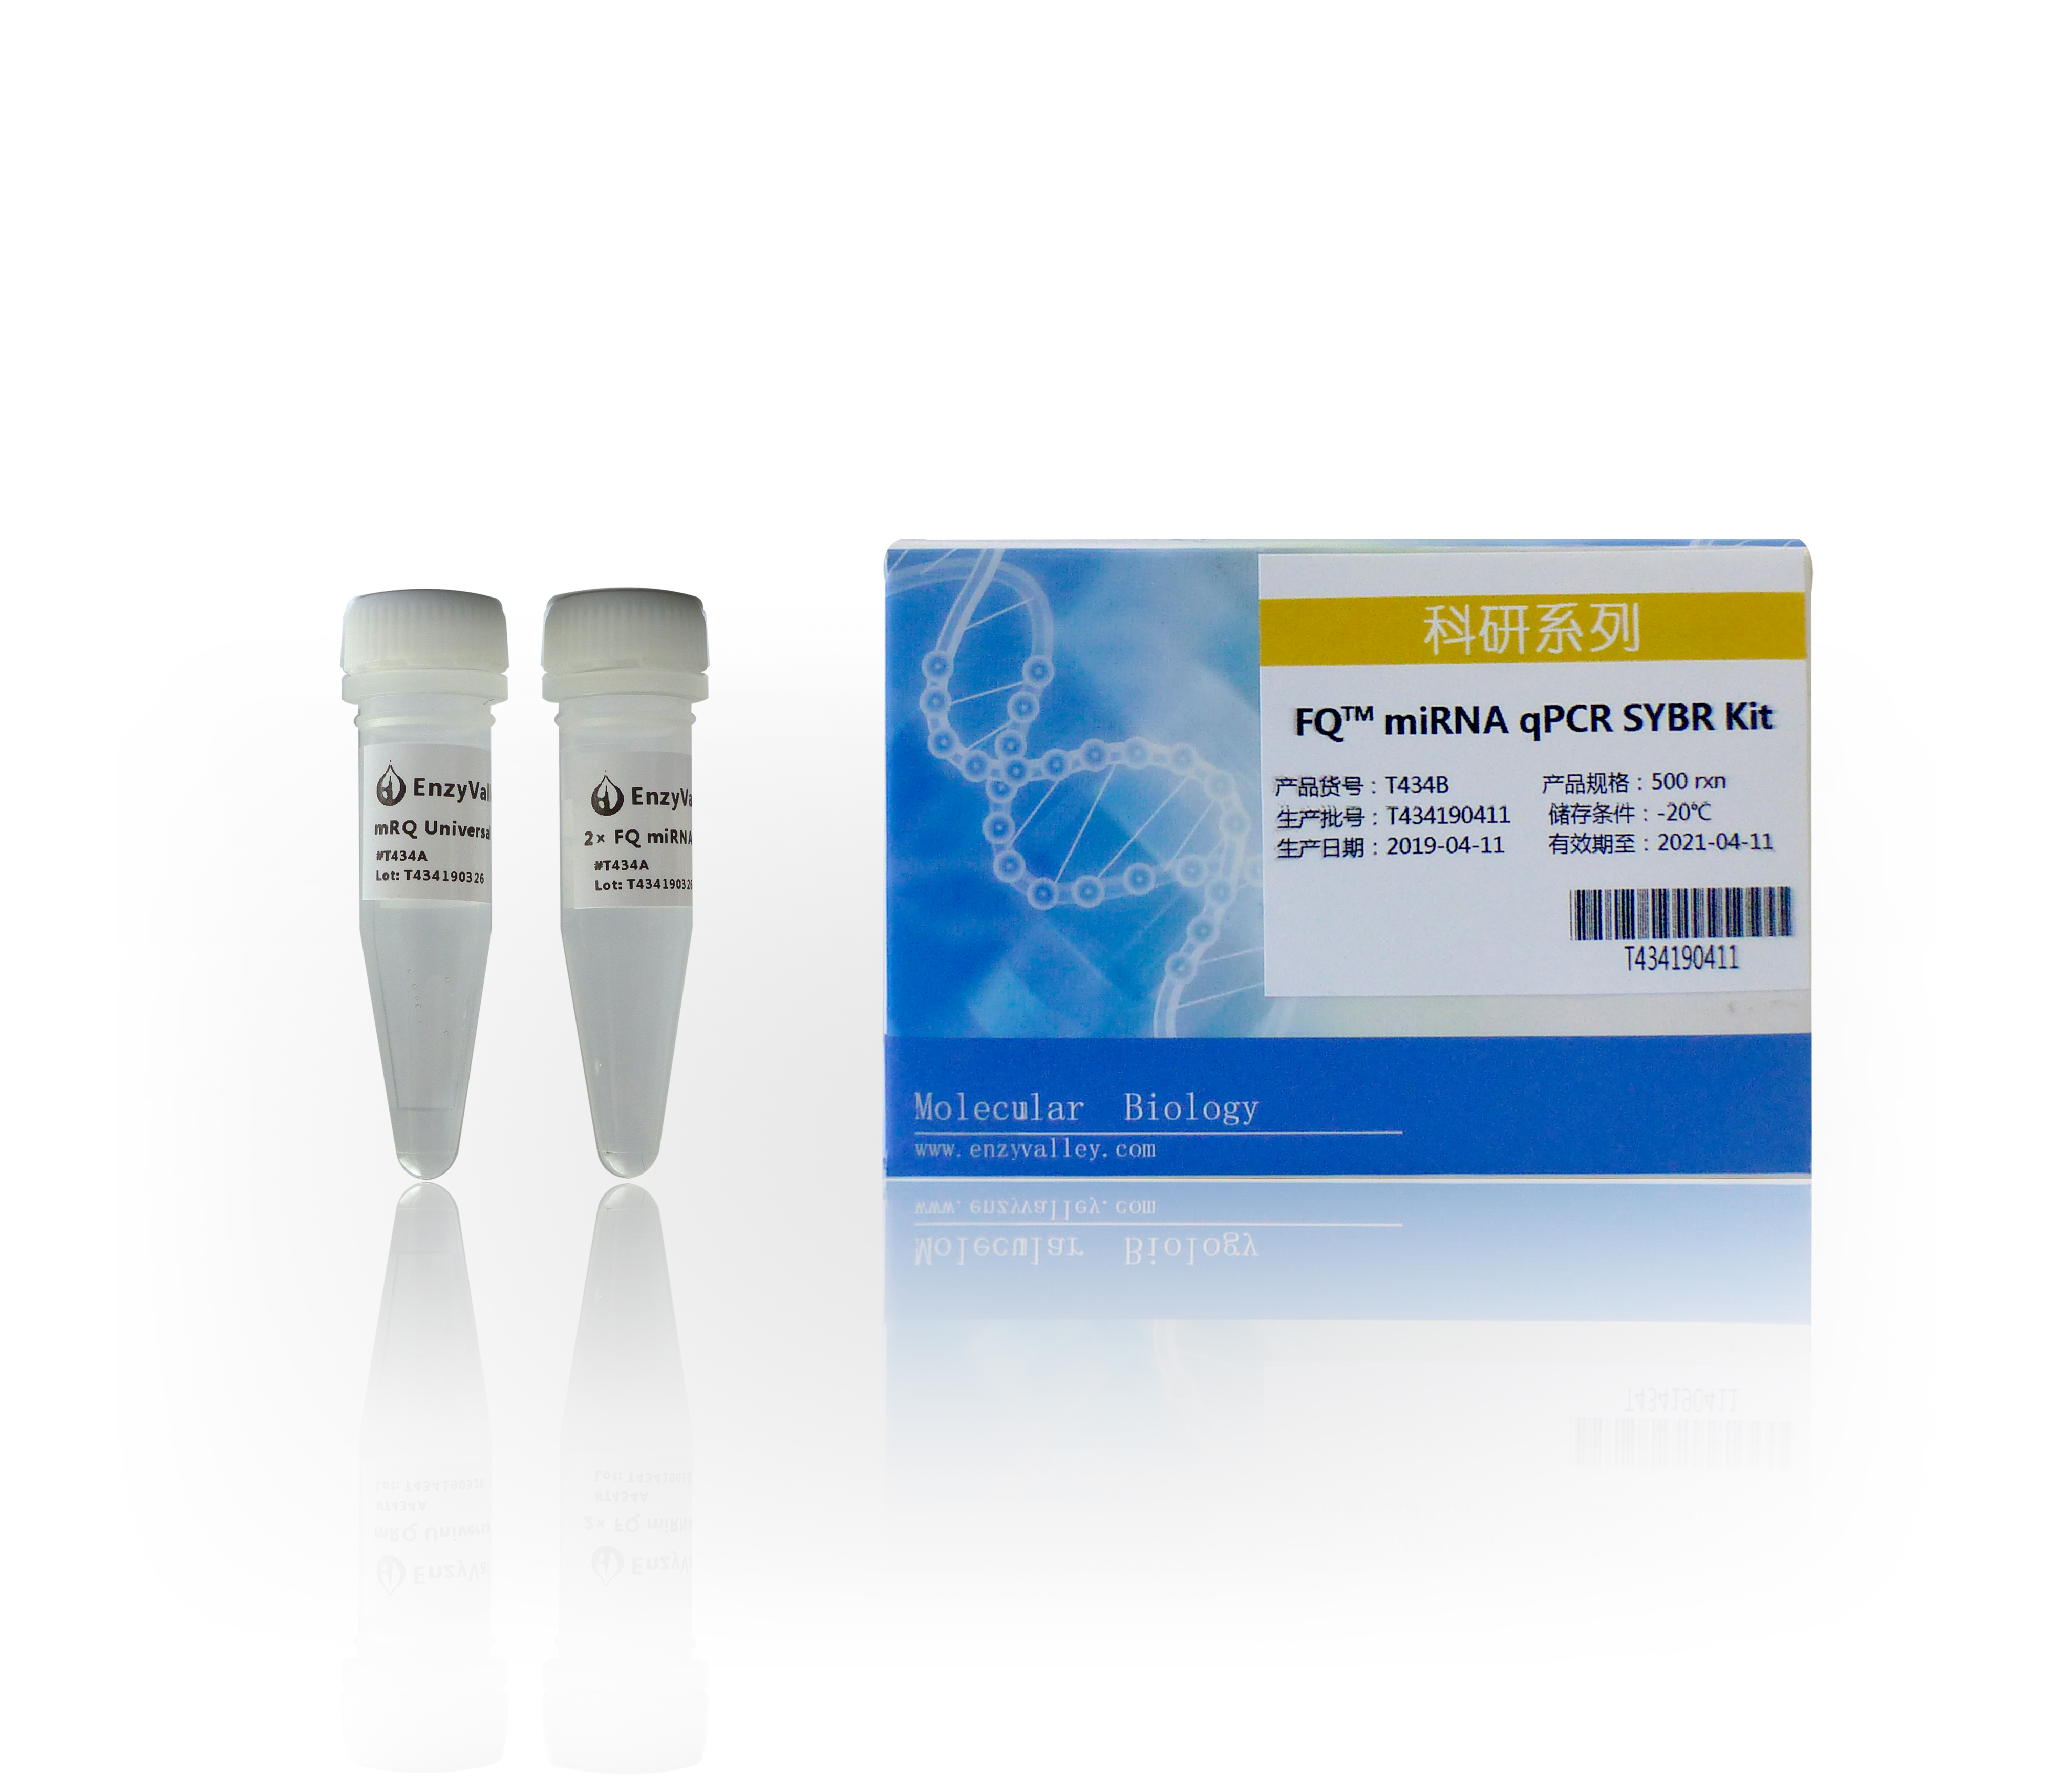 加尾法miRNA RT-qPCR试剂盒：FQTM miRNA qPCR SYBR Kit